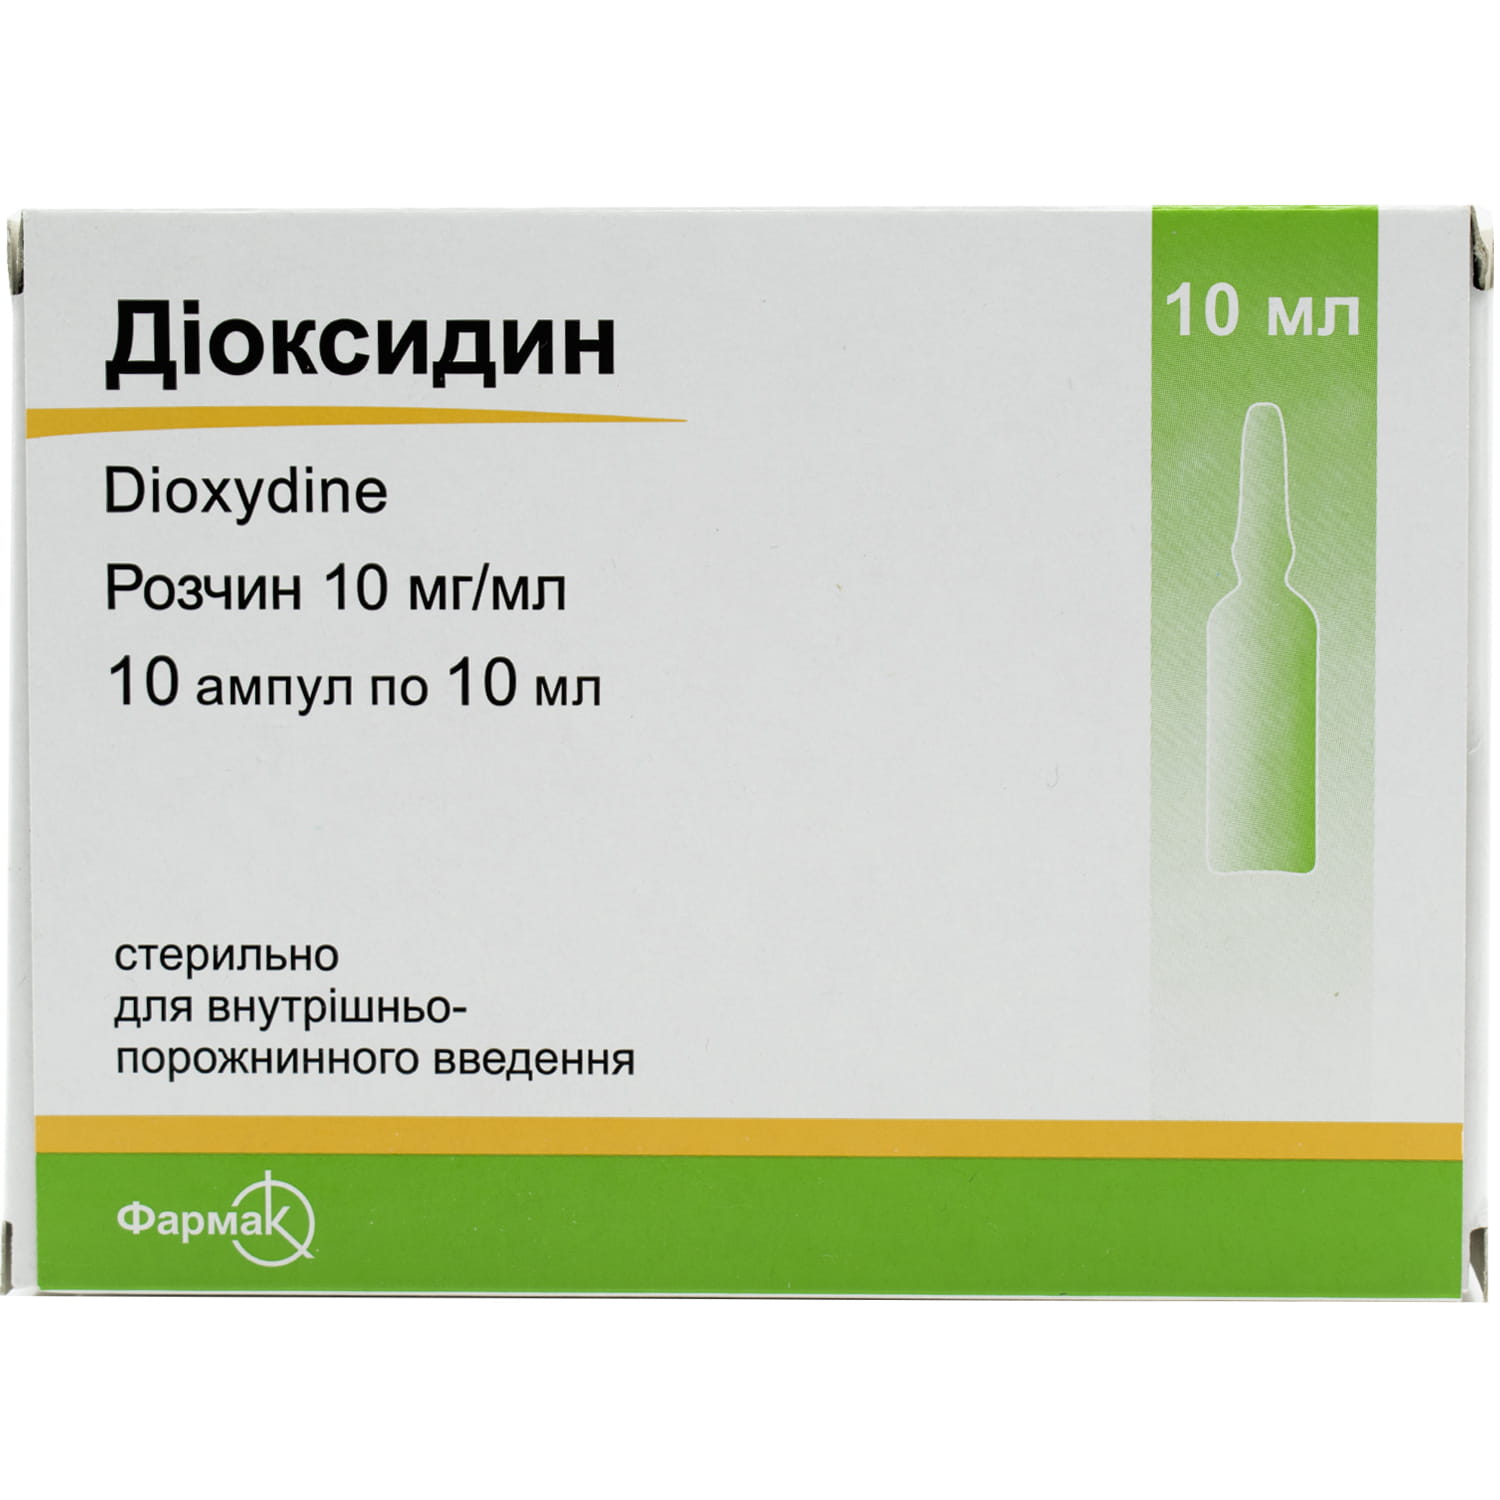 Диоксидин Для Лечения Молочницы Отзывы